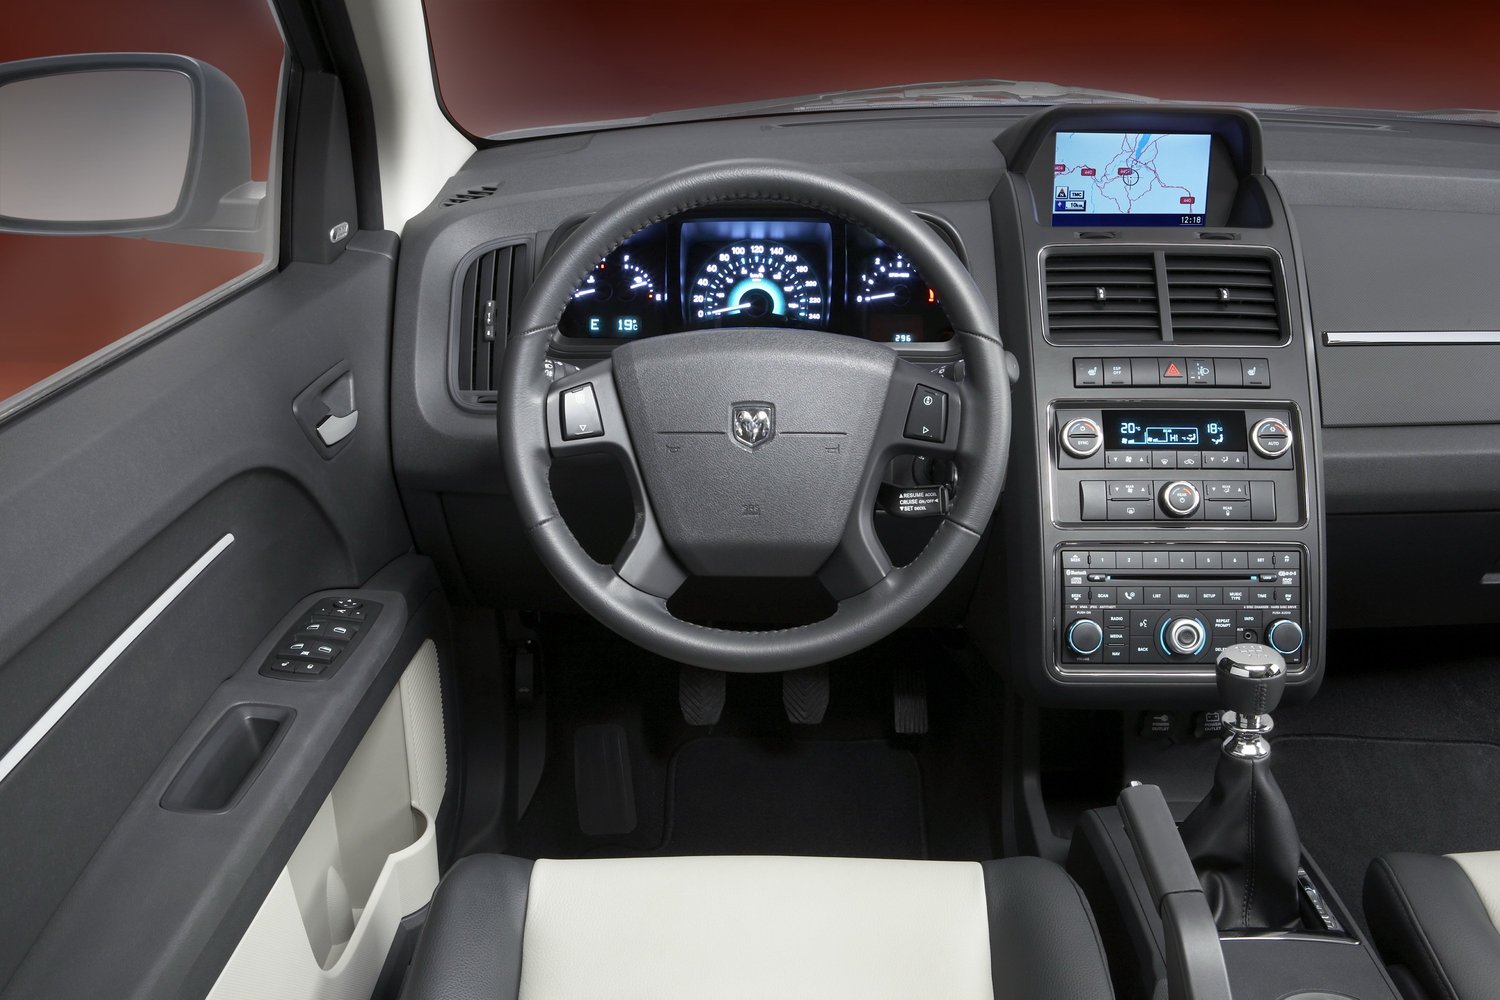 кроссовер Dodge Journey 2008 - 2016г выпуска модификация 2.4 AT (175 л.с.)